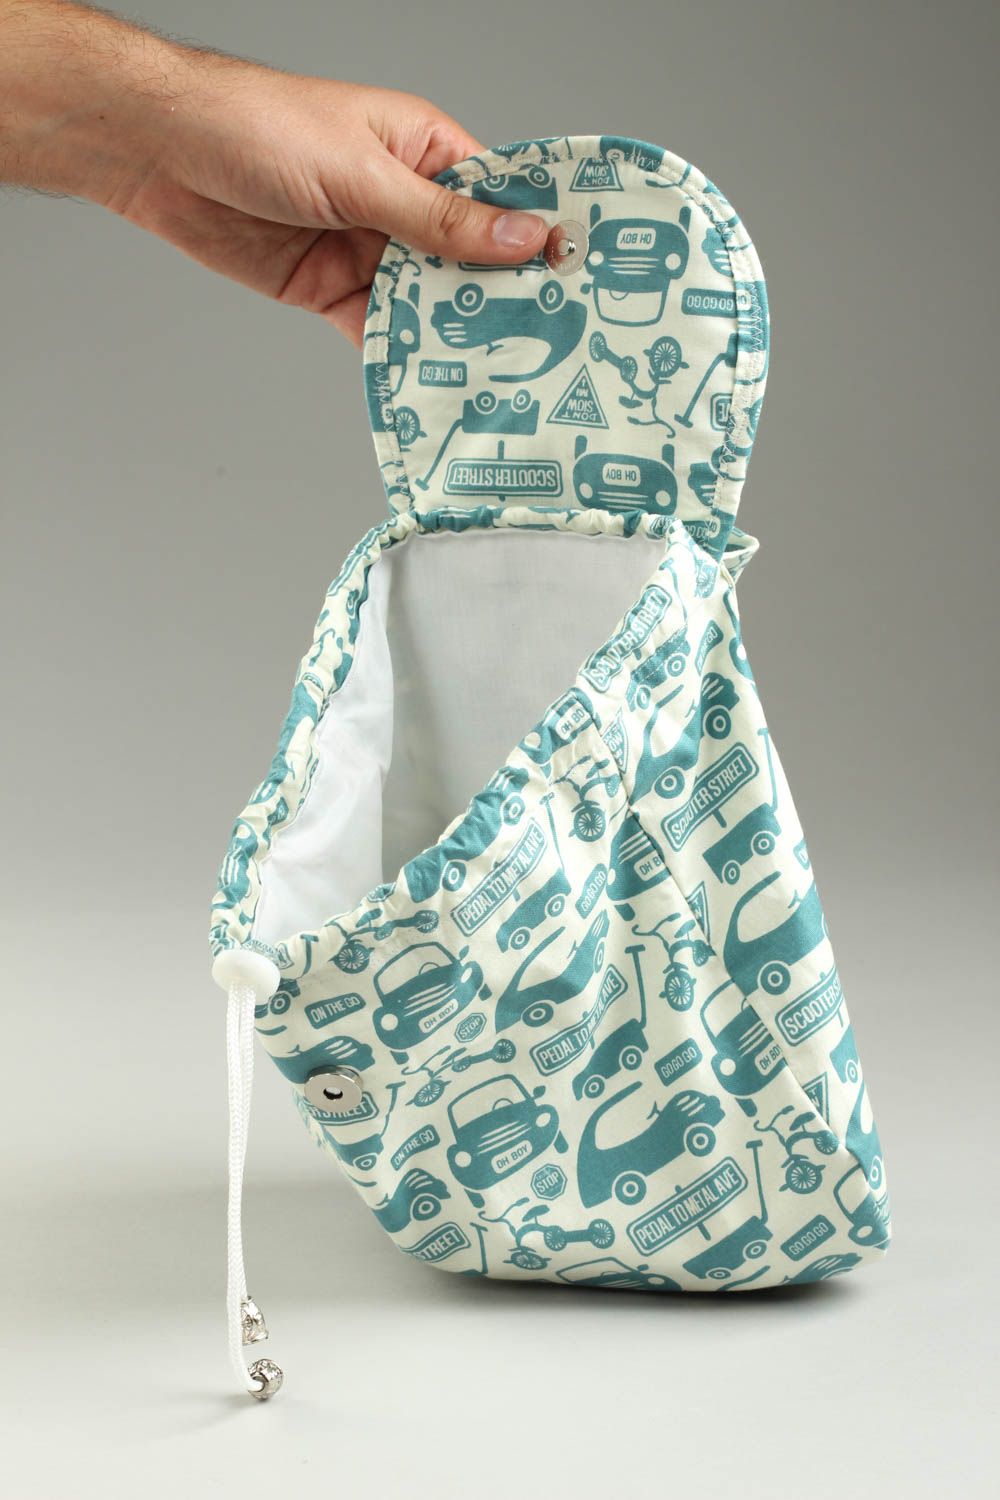 Маленький рюкзак хэнд мейд рюкзак для ребенка текстильный рюкзак с машинками фото 5